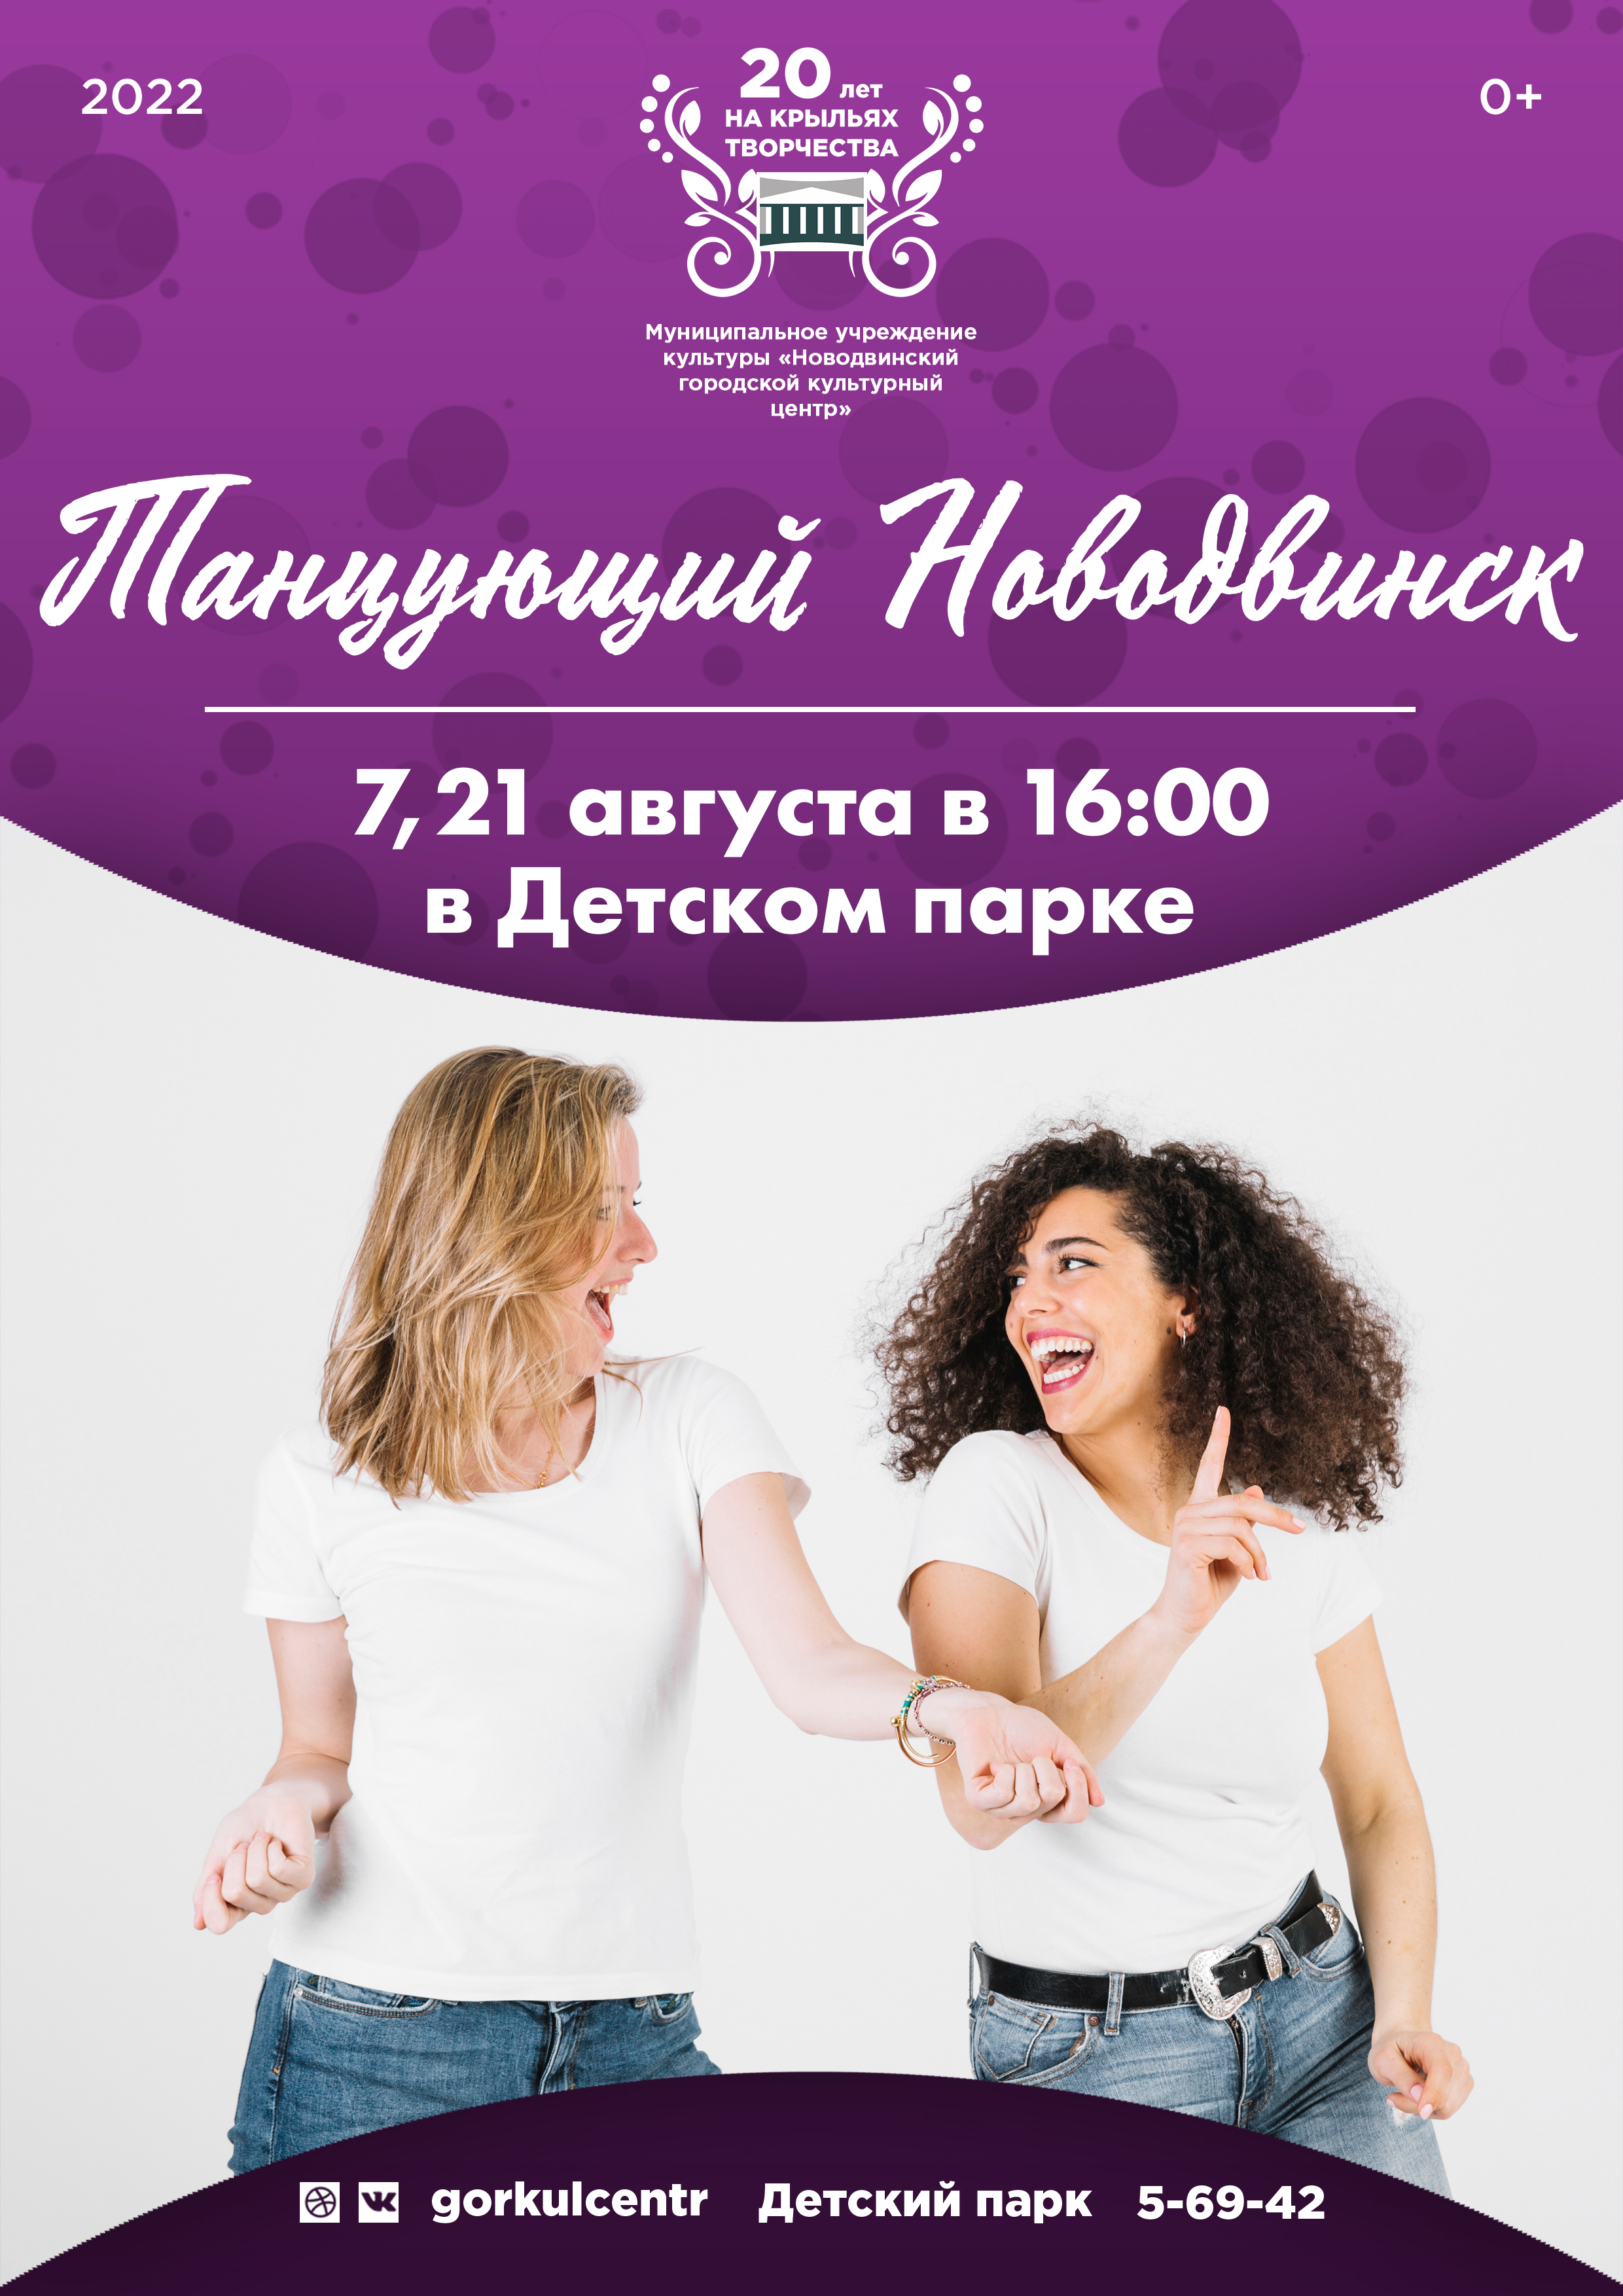 Приглашаем жителей Новодвинска на танцевальные мастер-классы!